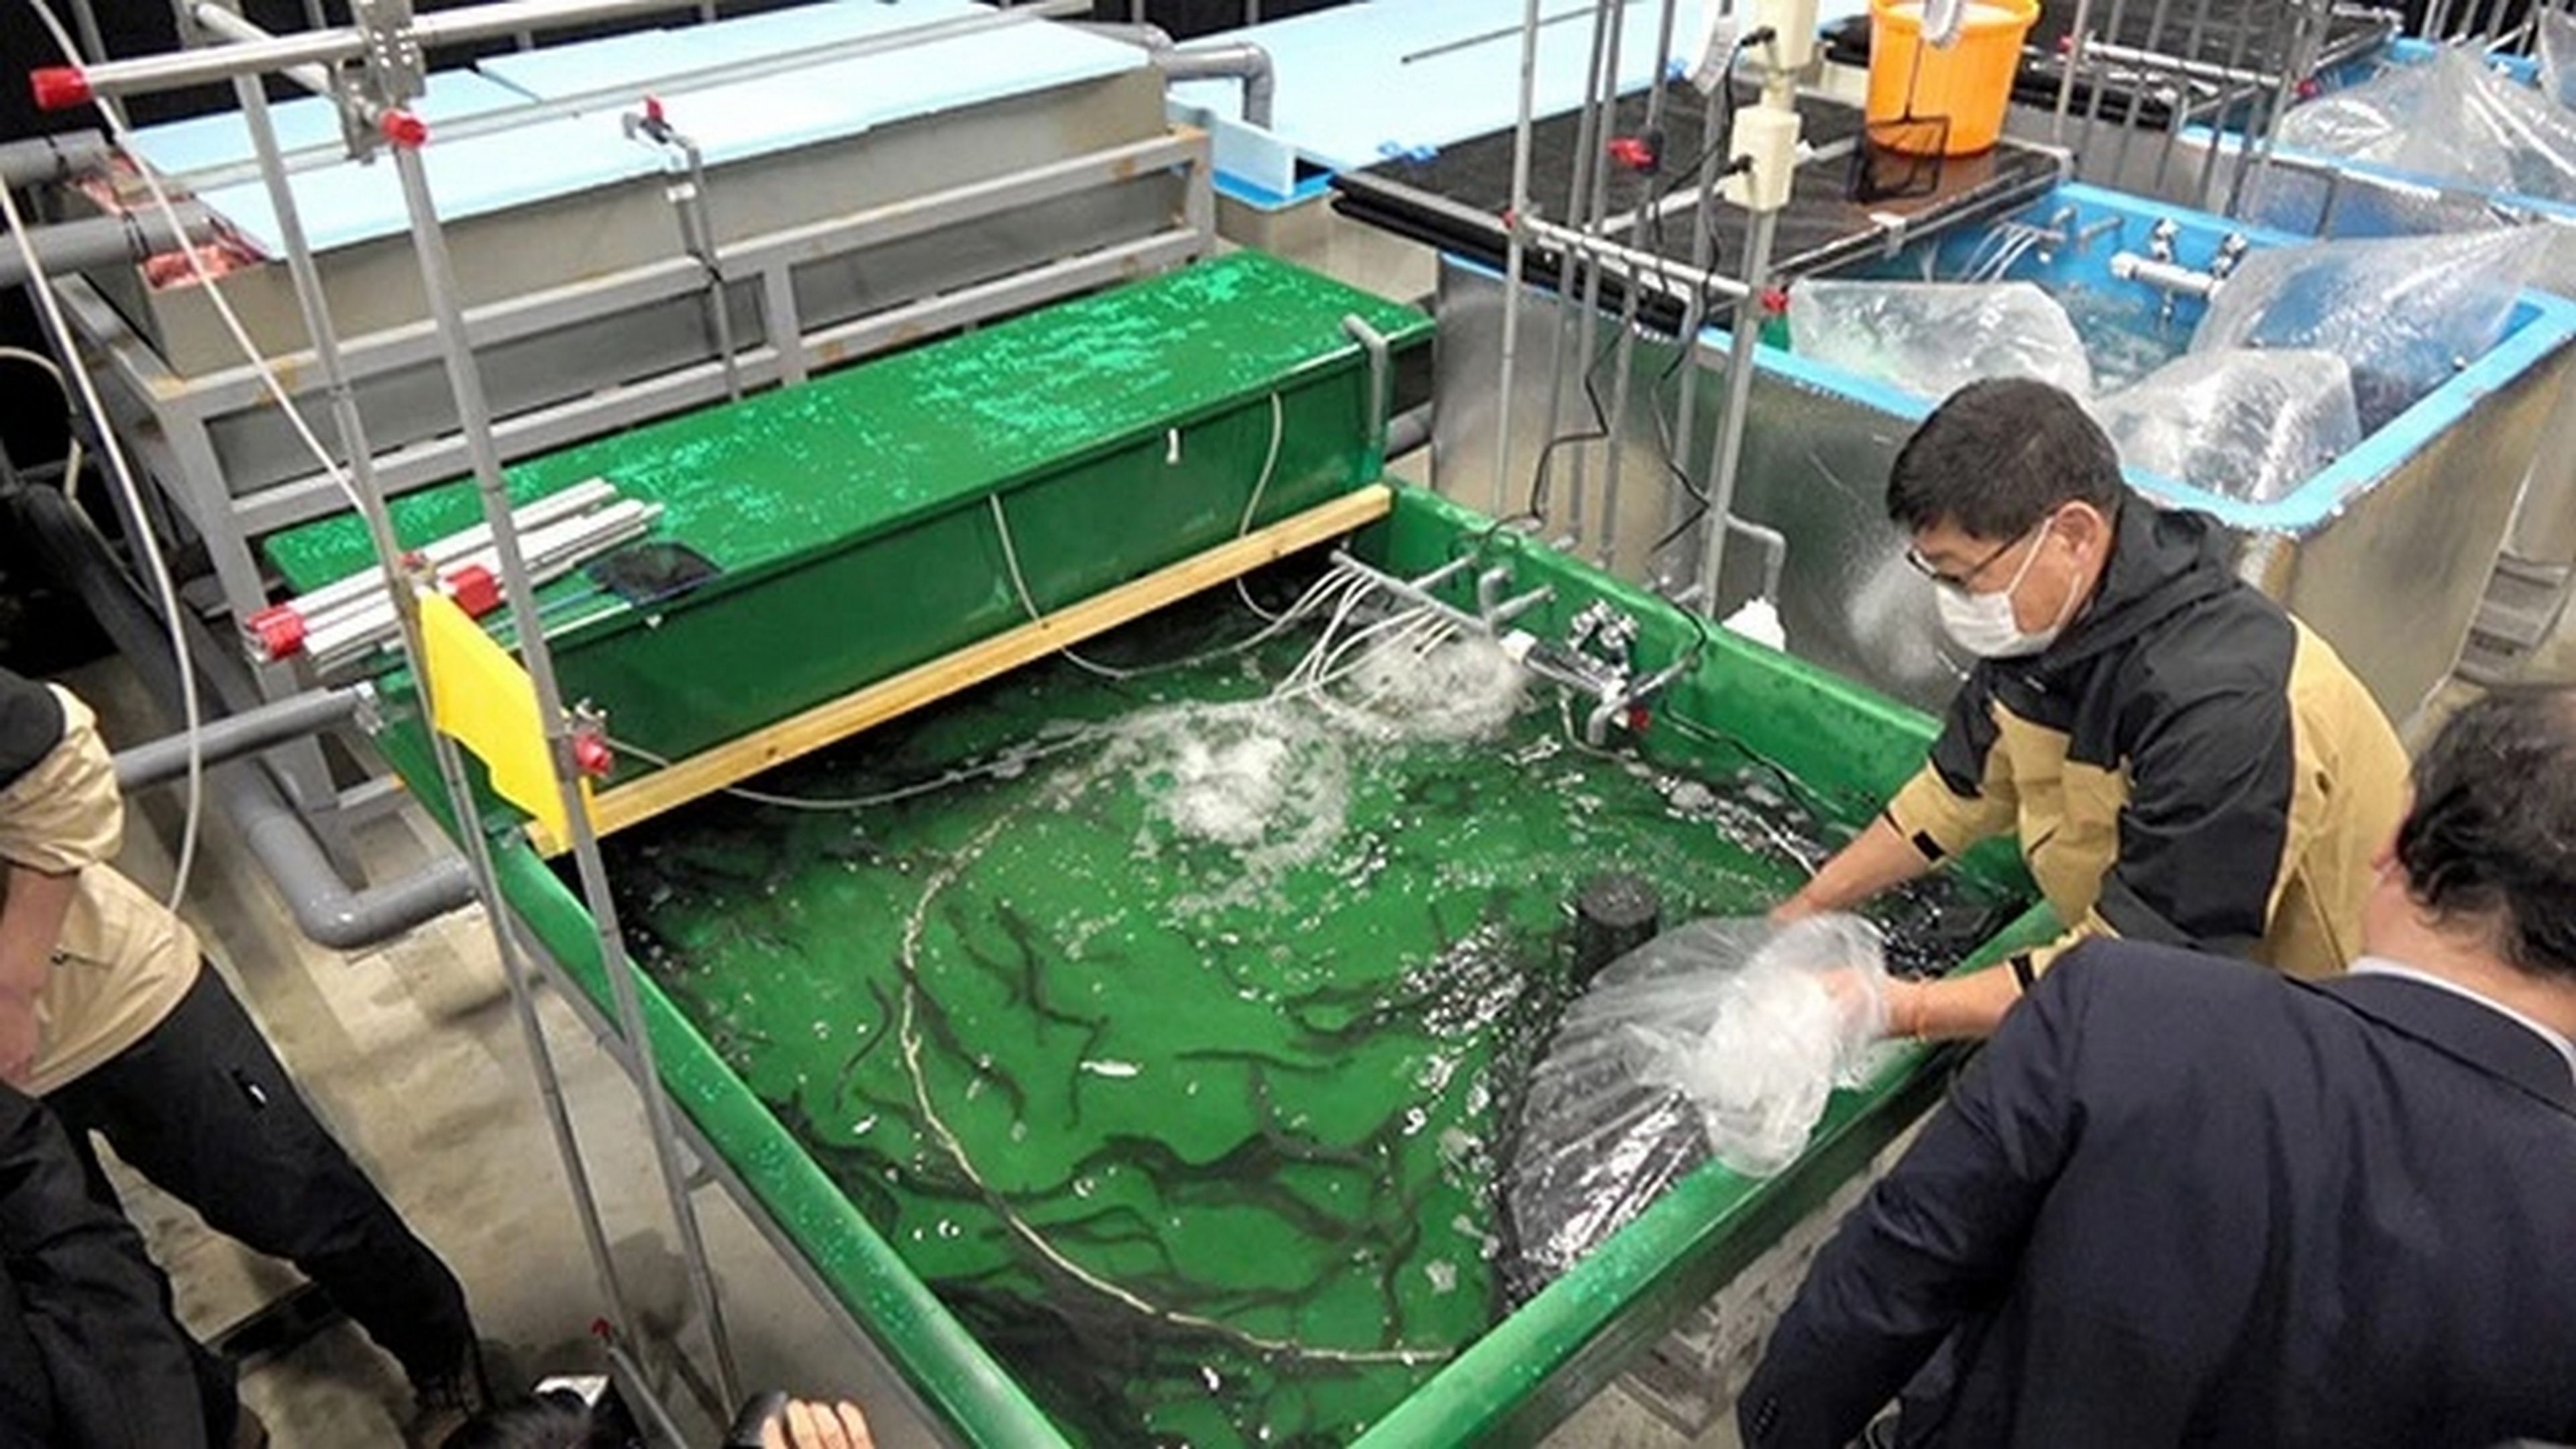 Un centro de datos japonés usa nieve para enfriar sus servidores y cría anguilas con el calor que expelen